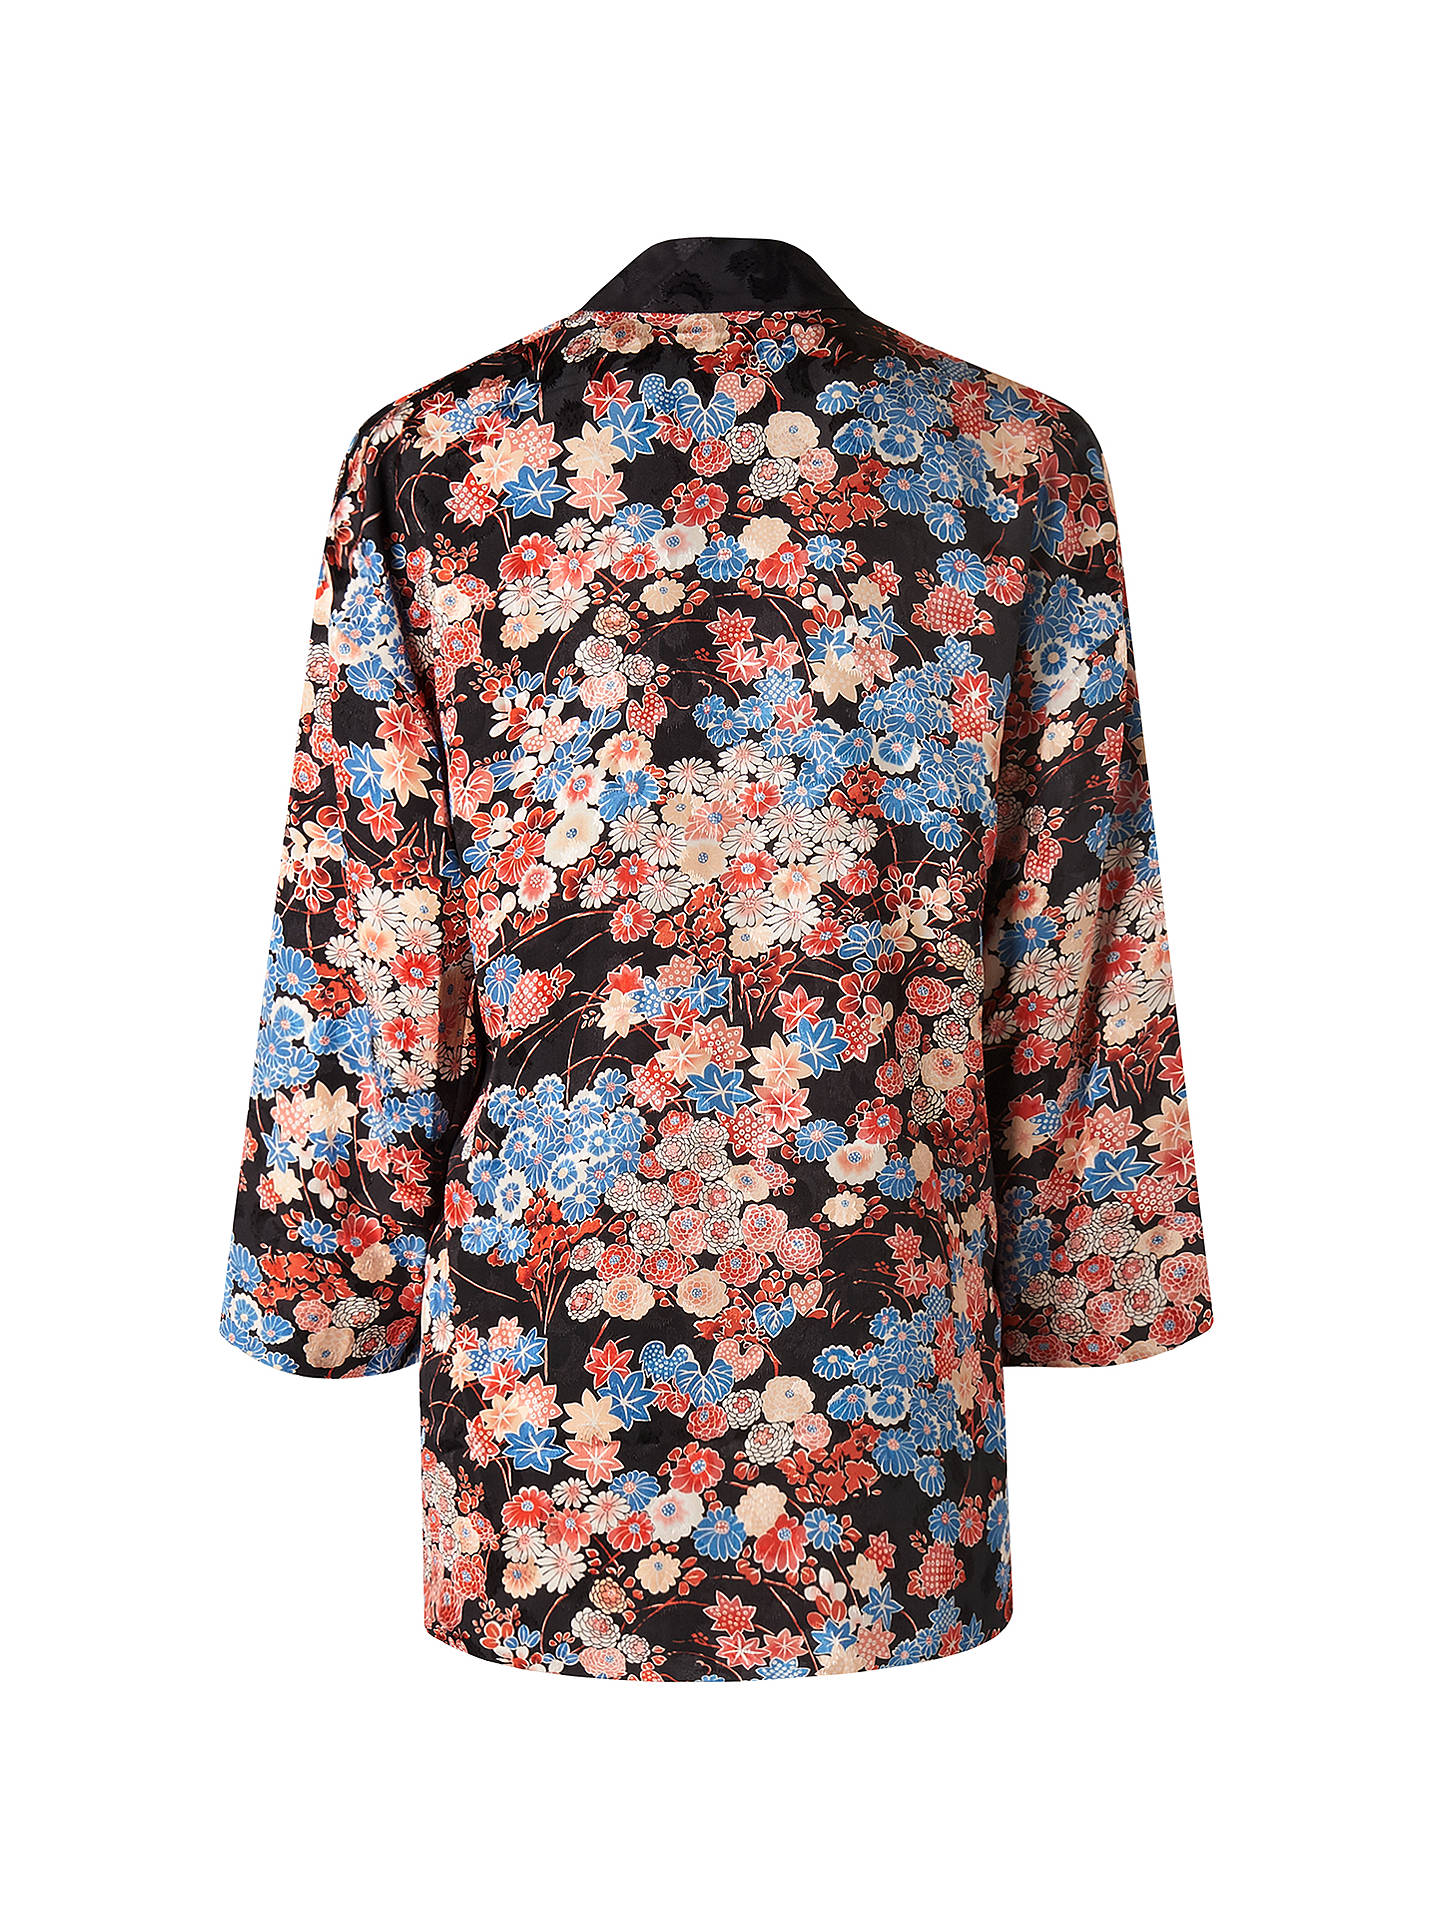 L.K. Bennett Carrie Sunset Flower Jacket, Printed at John Lewis & Partners